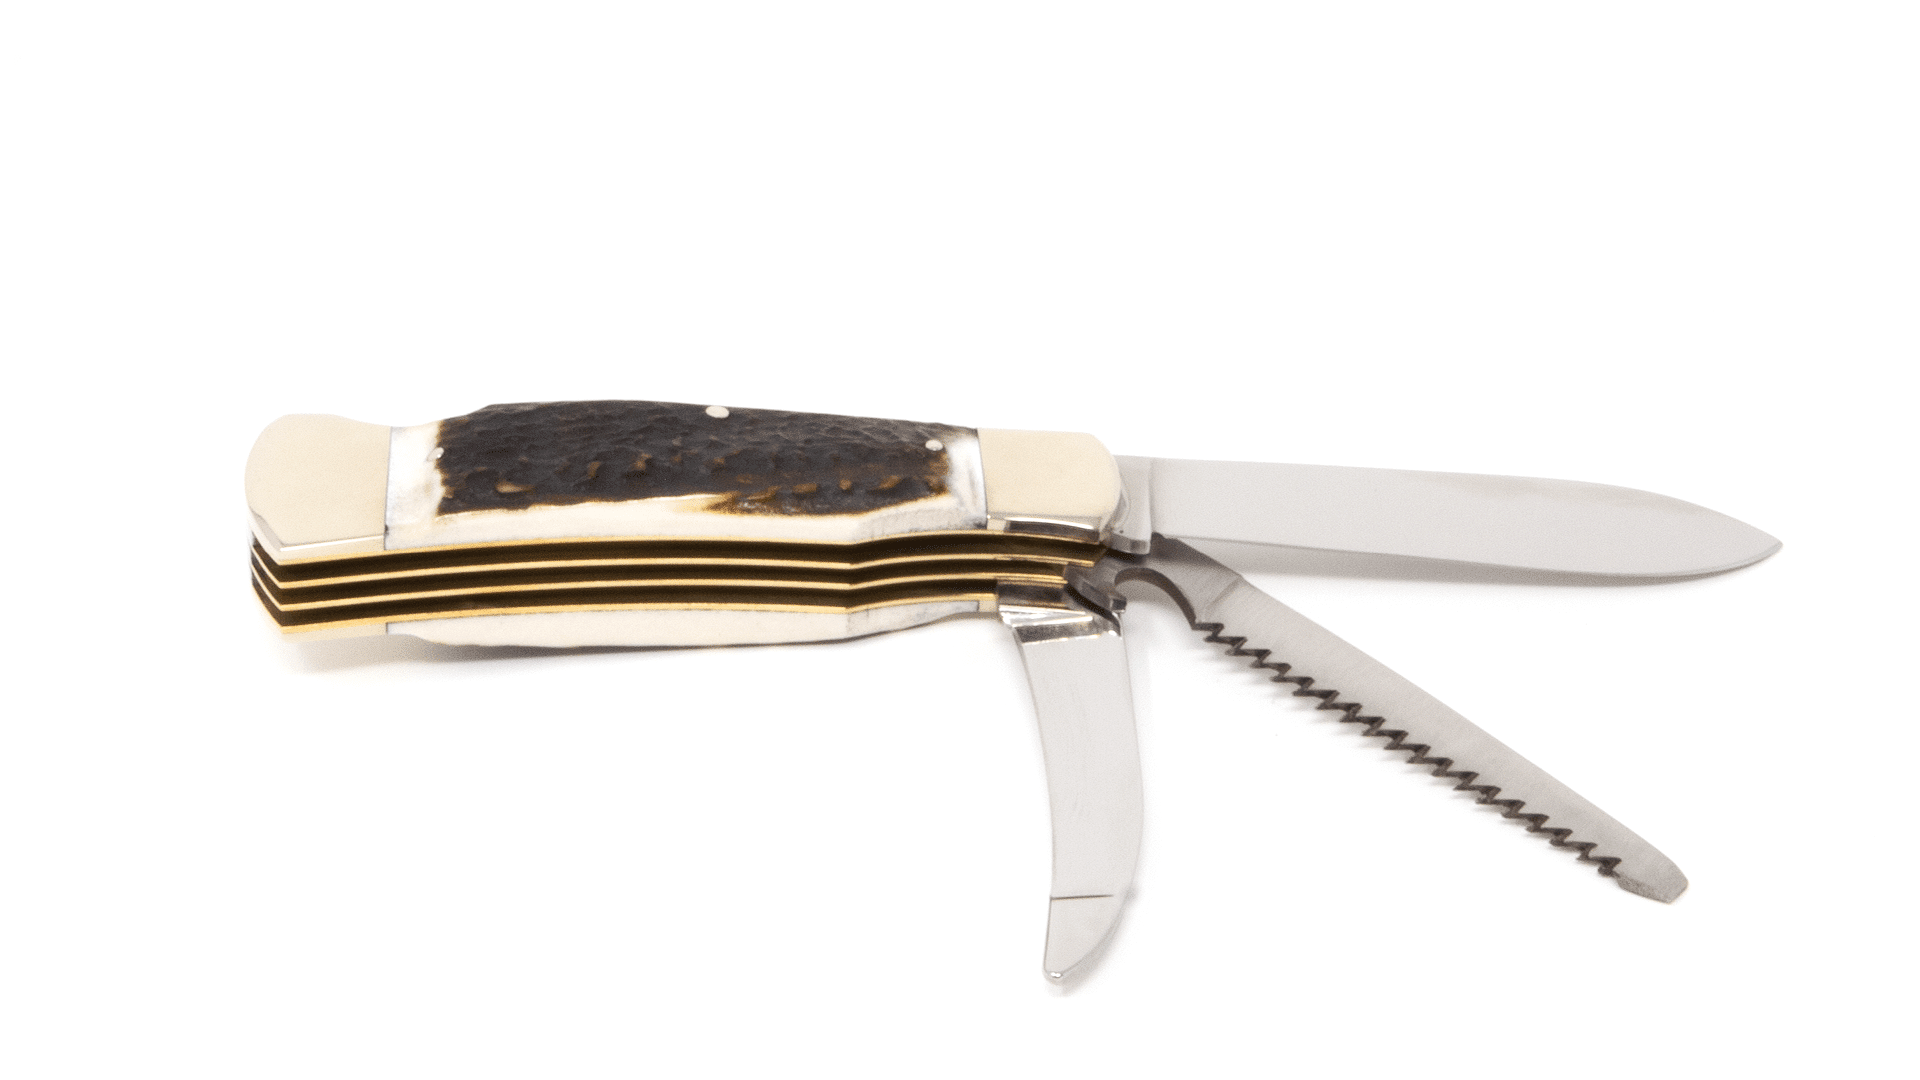 Hartkopf hunting pocket knife 3-part